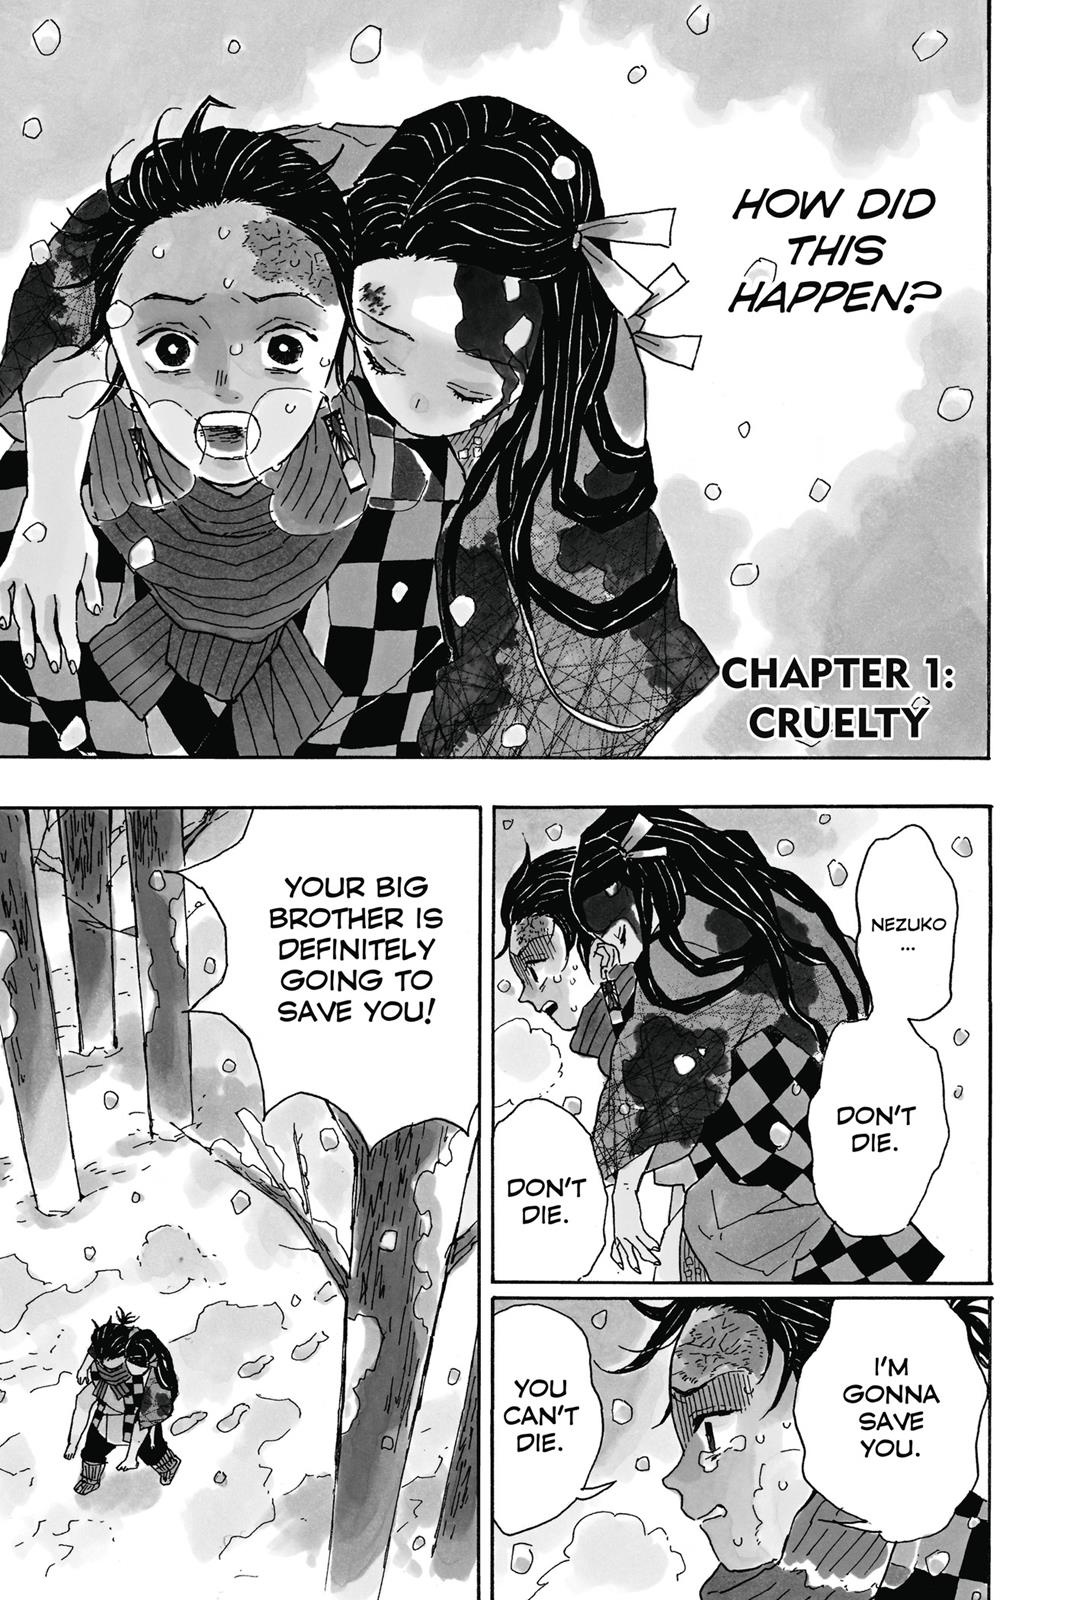 Demon Slayer Manga Manga Chapter - 1 - image 3